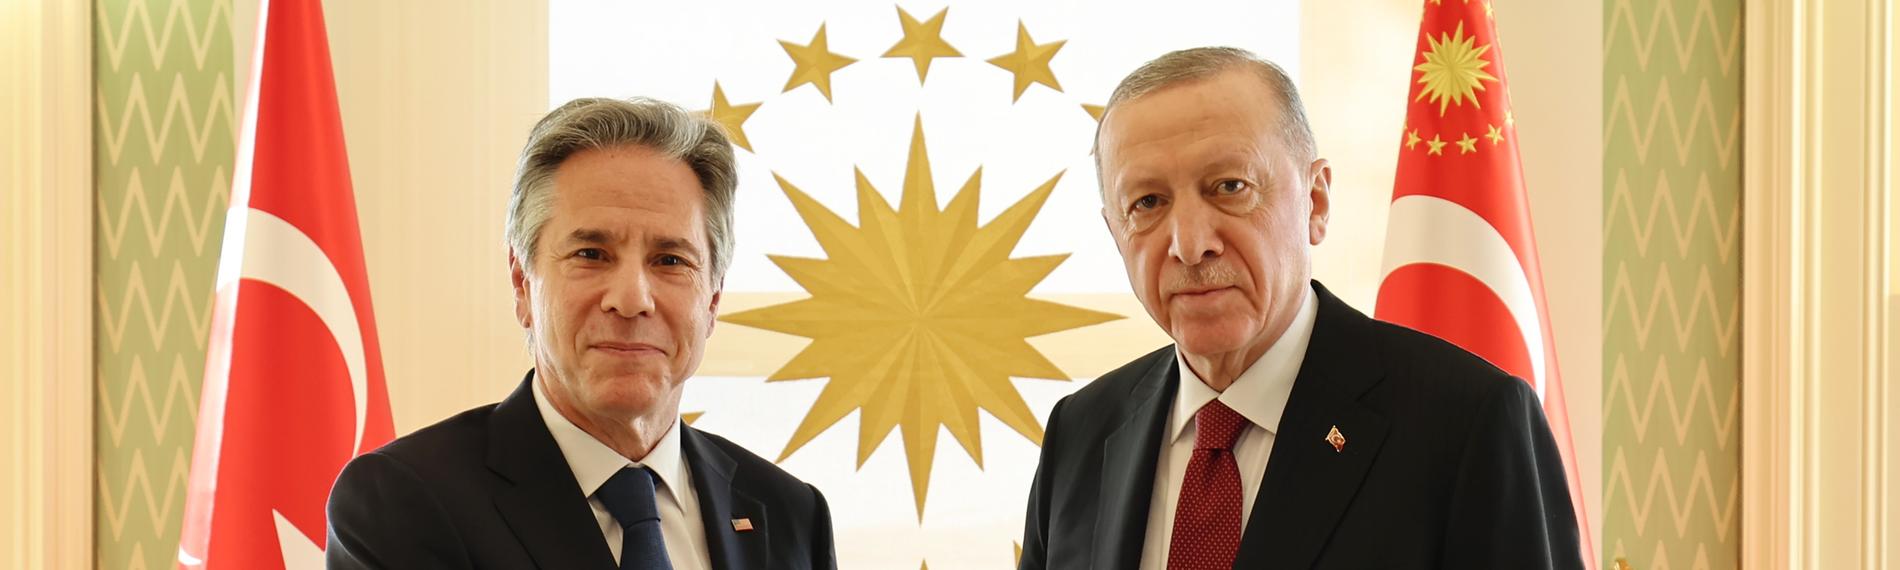 Blinken und Erdogan reichen sich die Hand